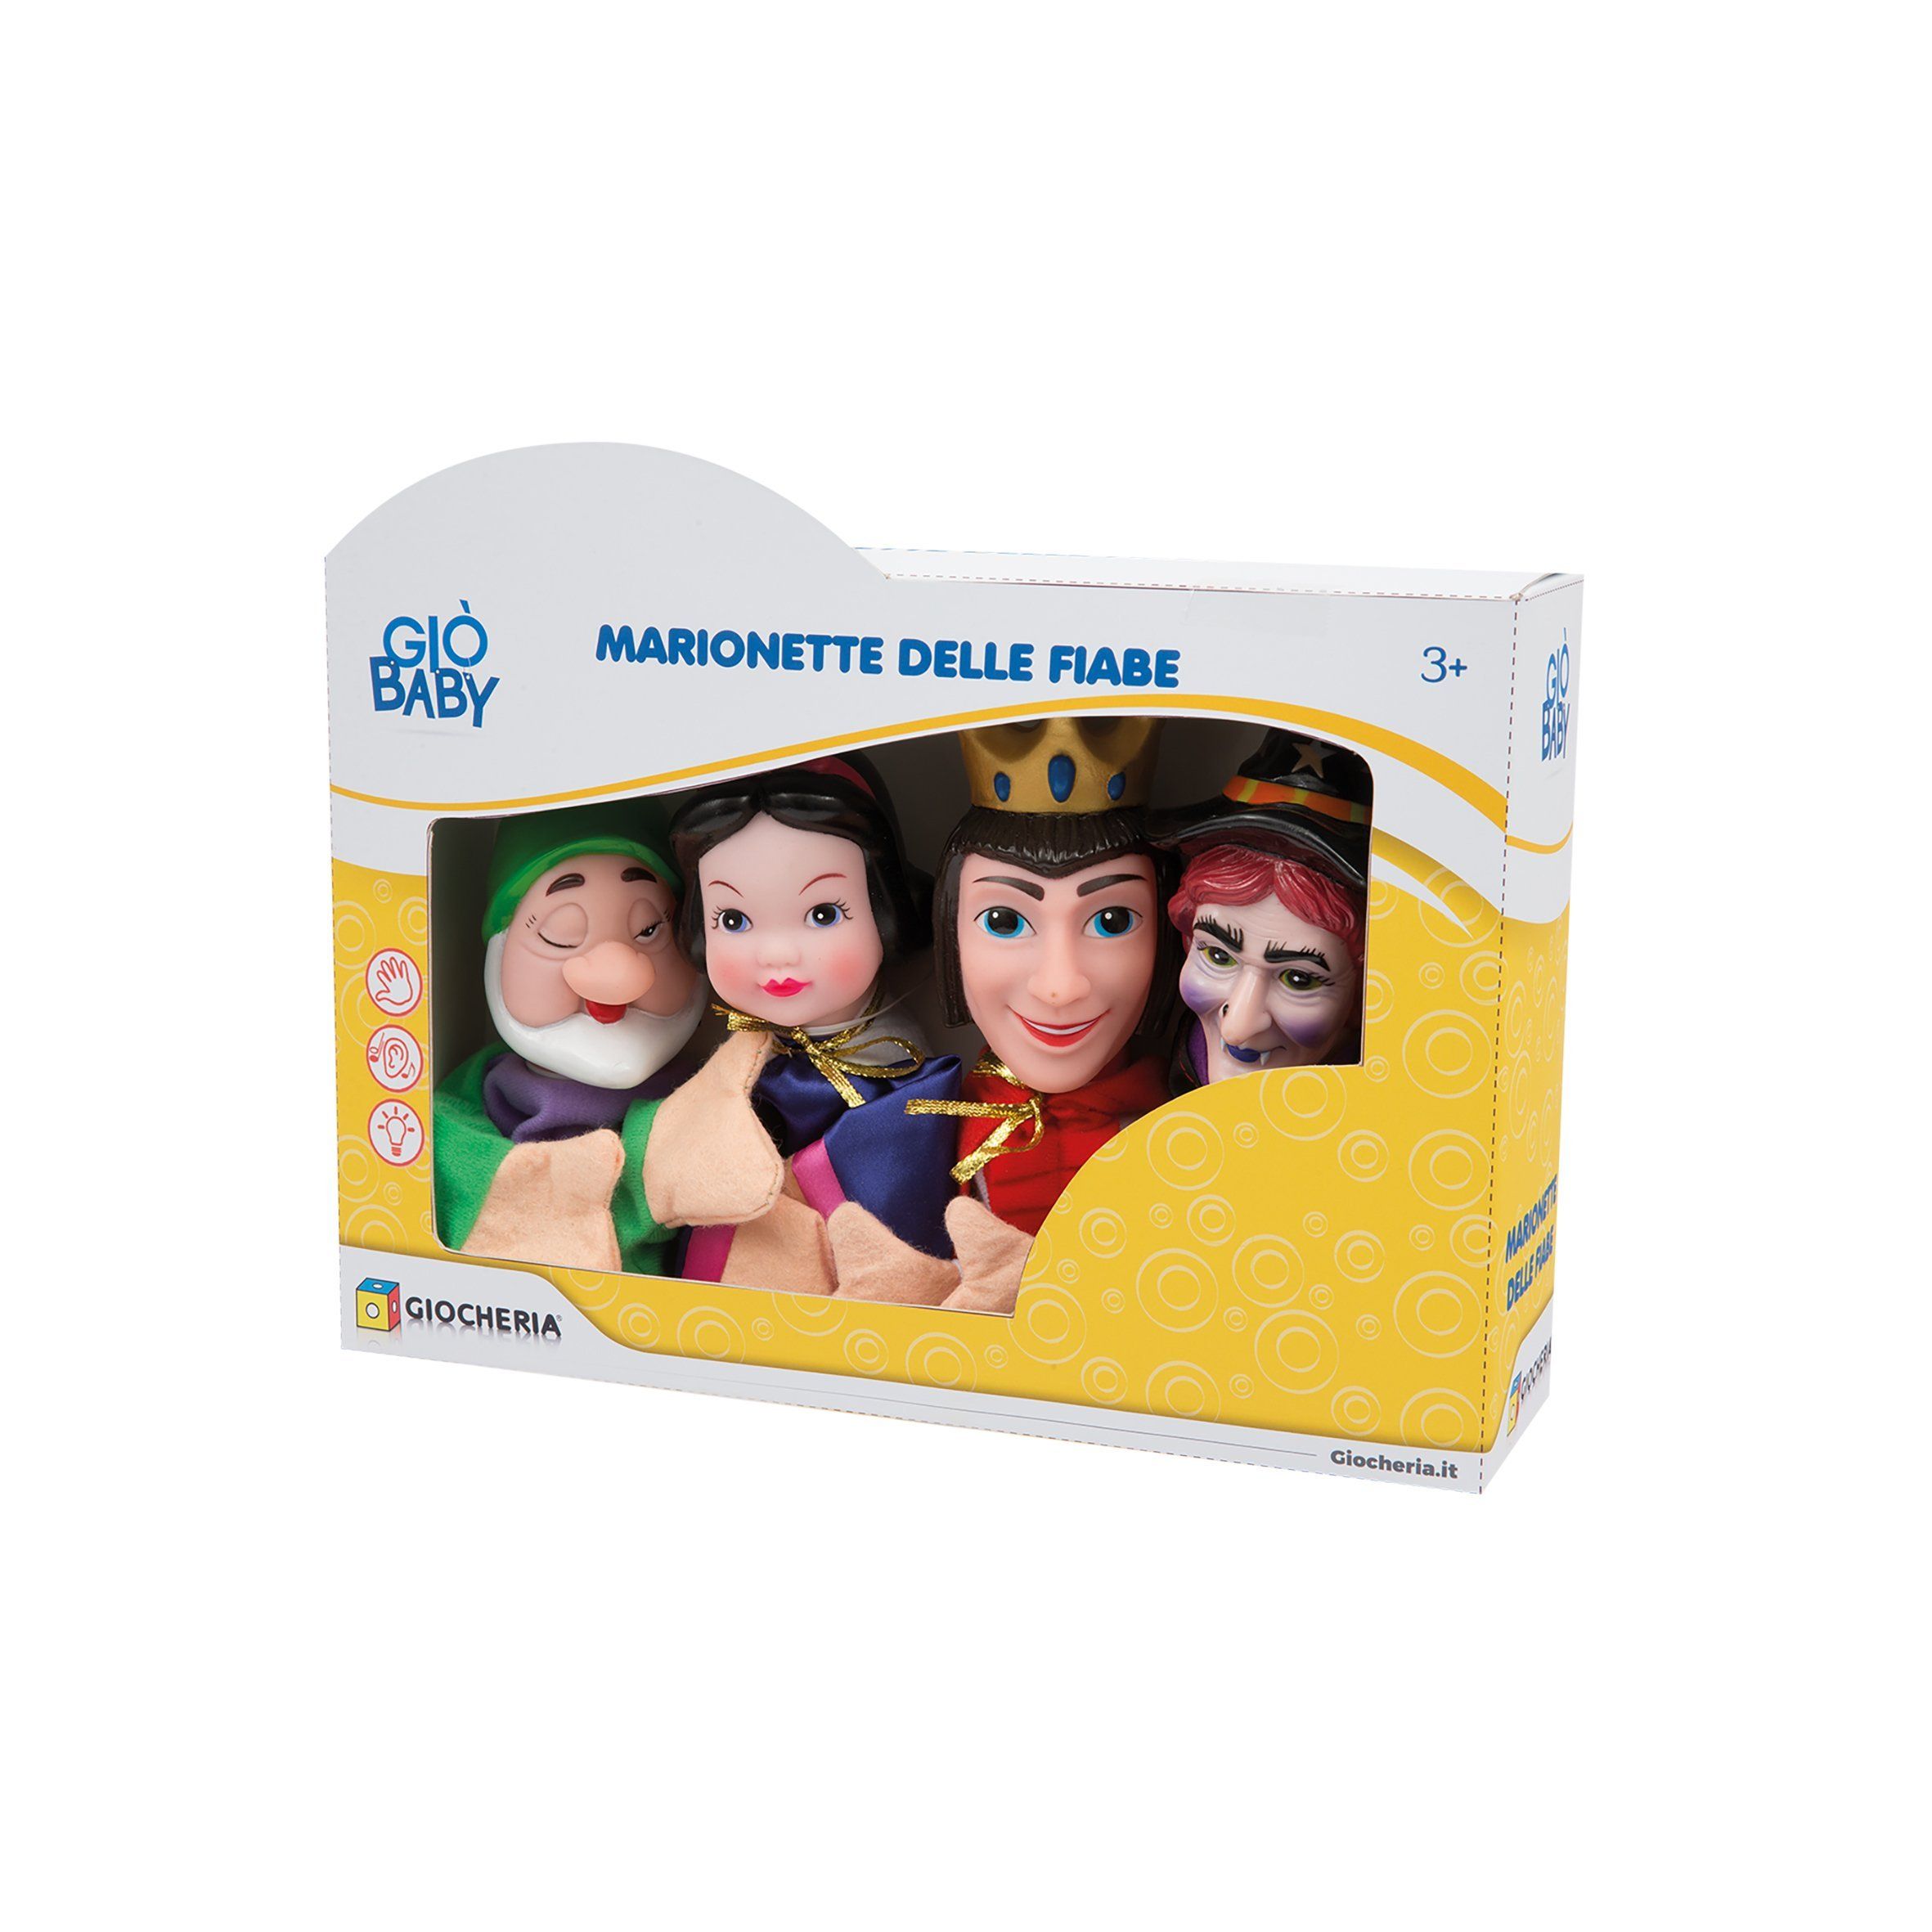 Gio' Baby - Marionette Delle Fiabe toysvaldichiana.it 